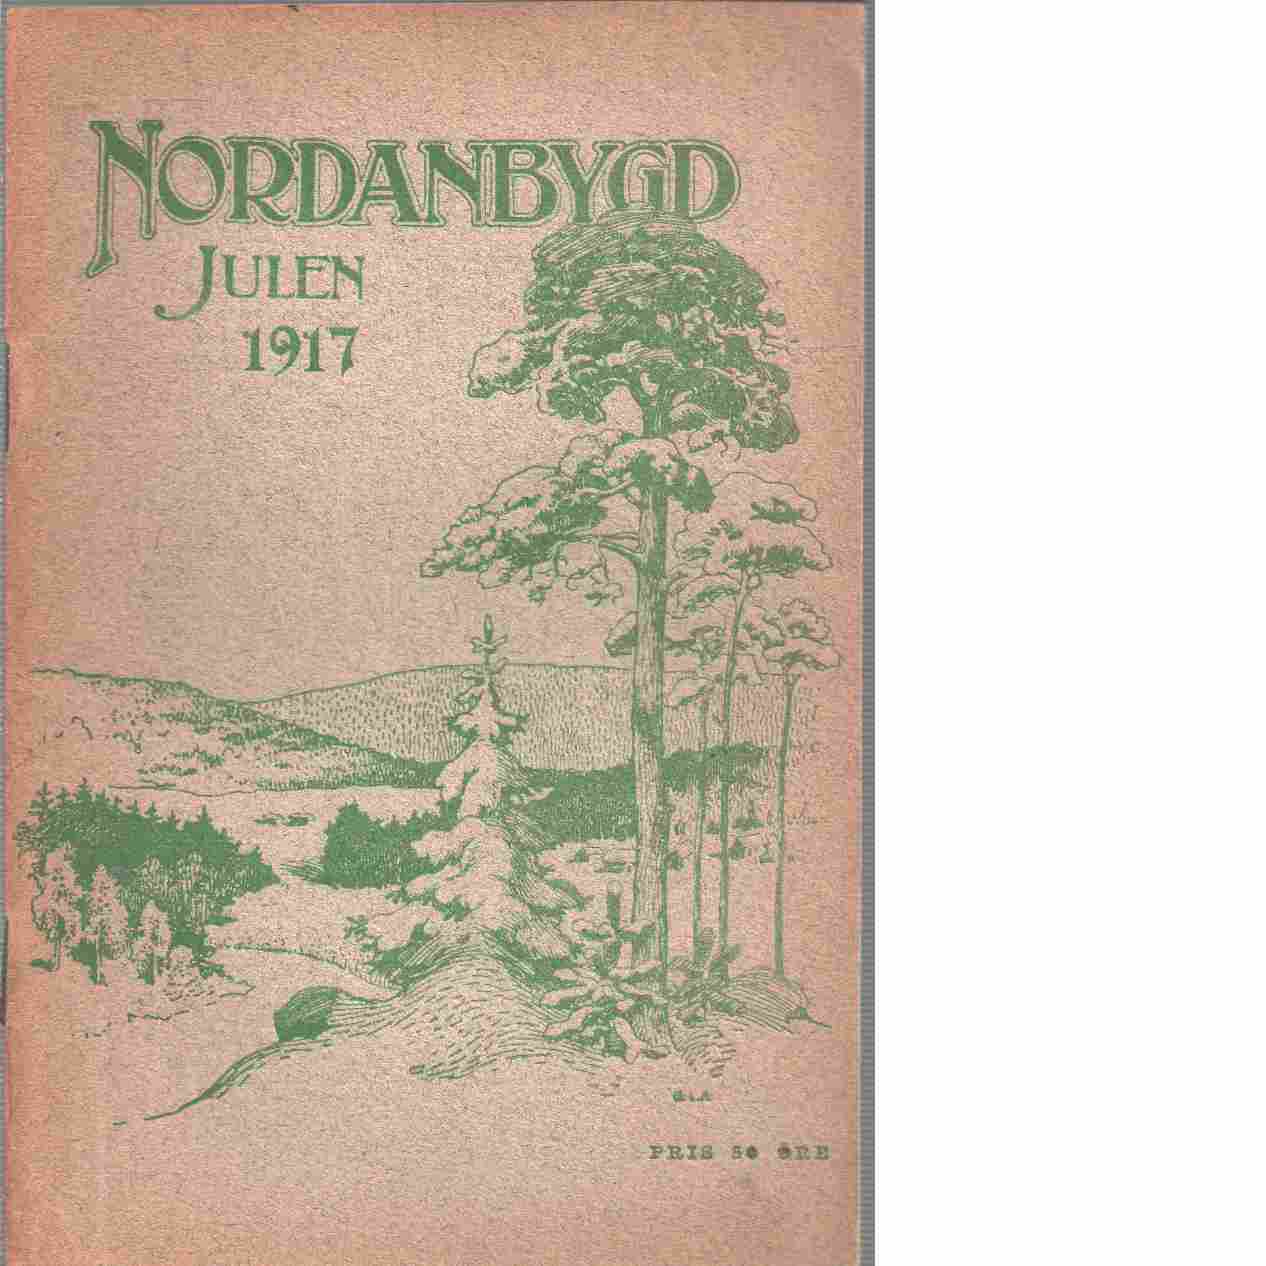 Nordanbygd : Julen 1917 utgifven af Folkhögskolans i Boden elevförbund - Red.